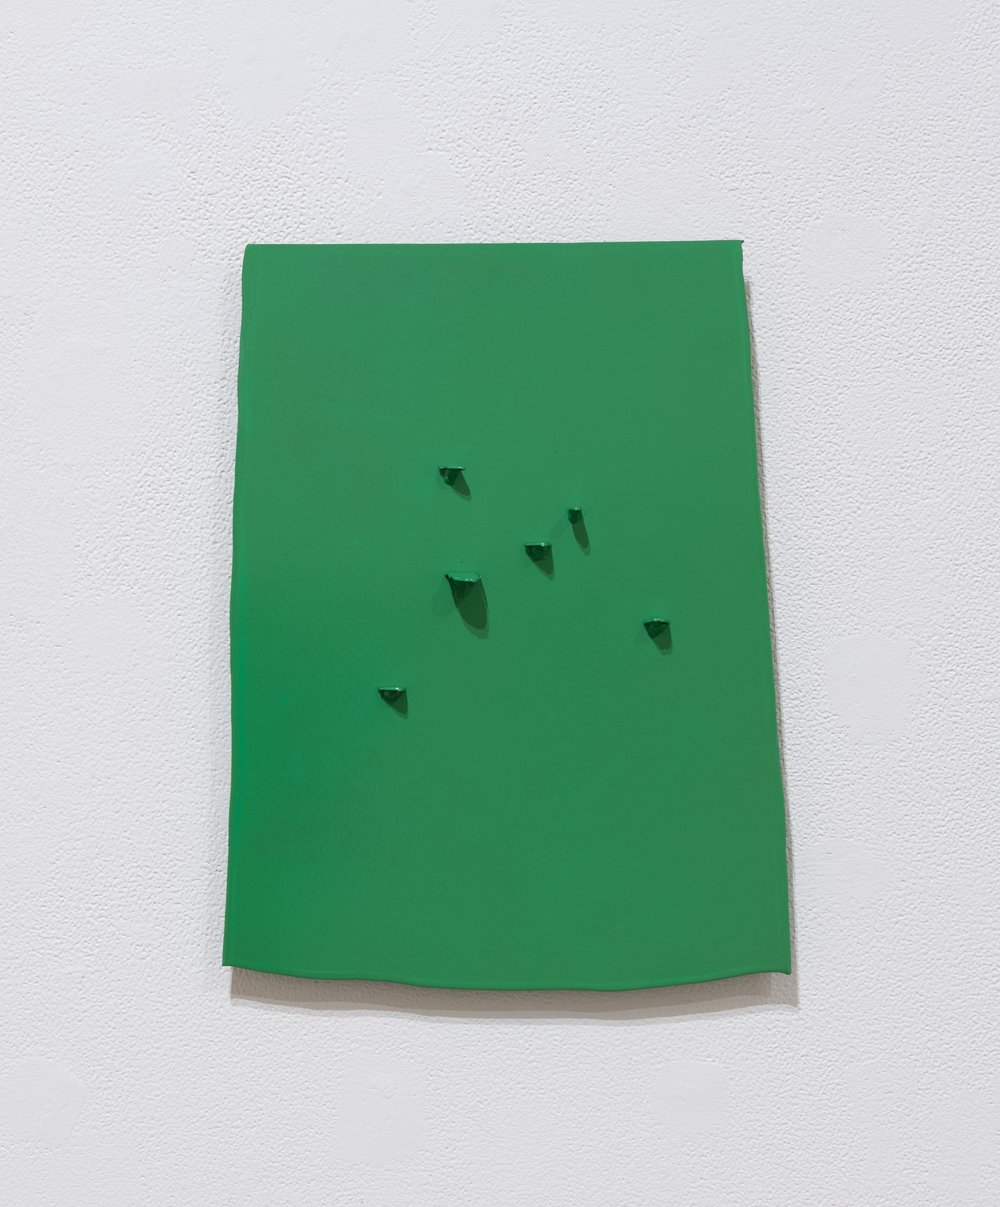 Amanda Wojick, green, 2022, powder coated steel, 13.75 x 10.5", $1,500